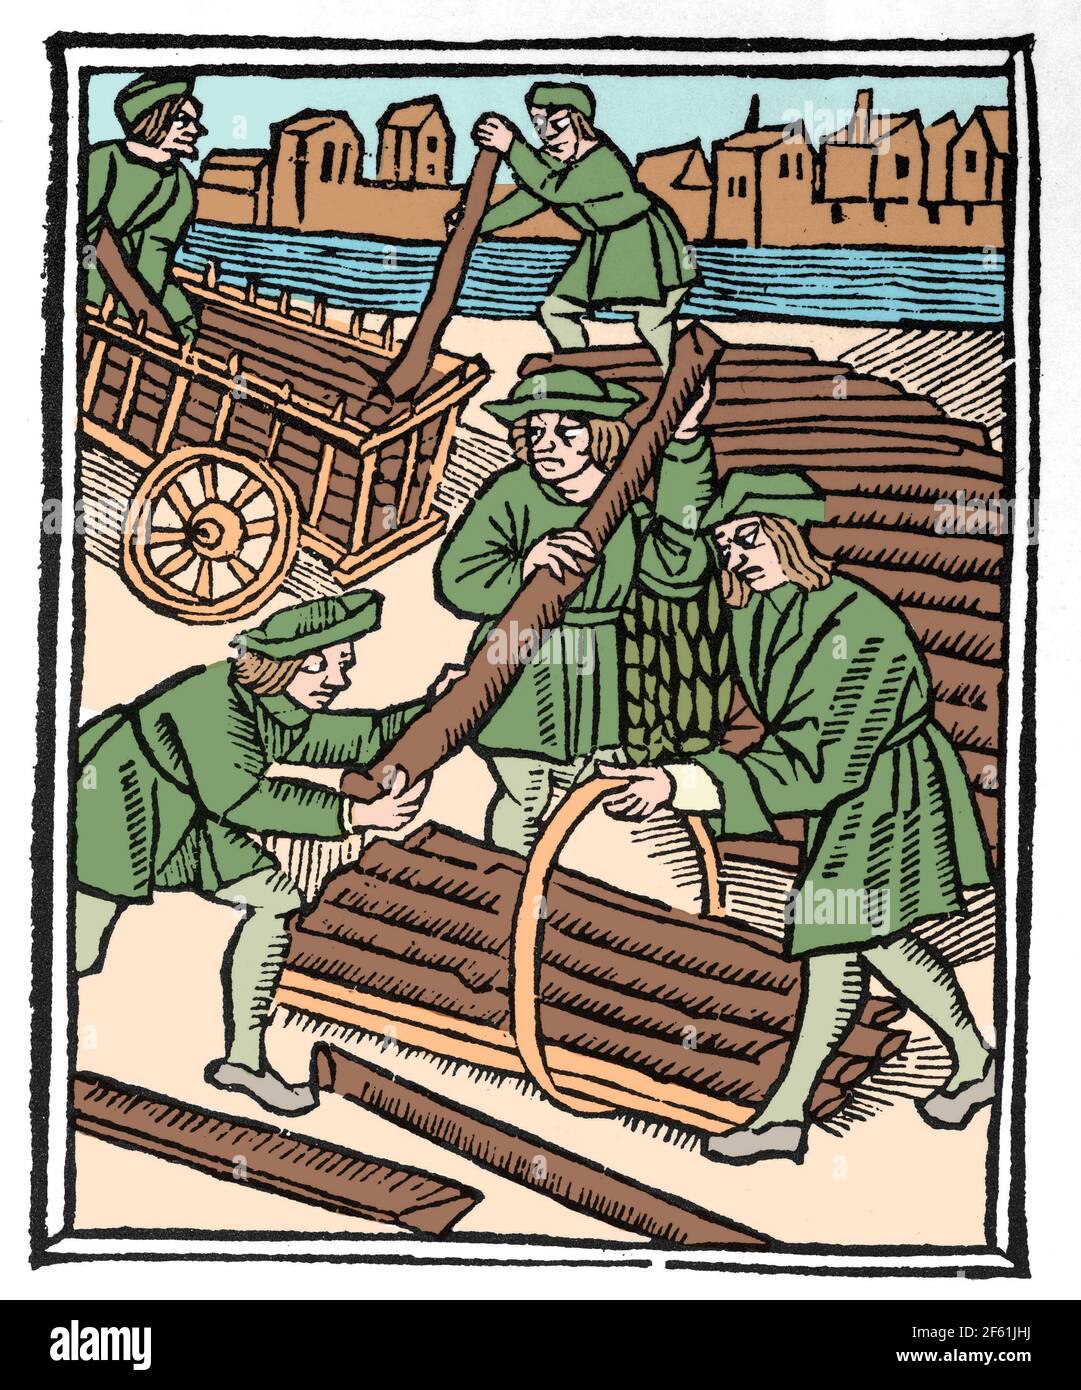 Les transporteurs de bois, cité médiévale de métier Banque D'Images